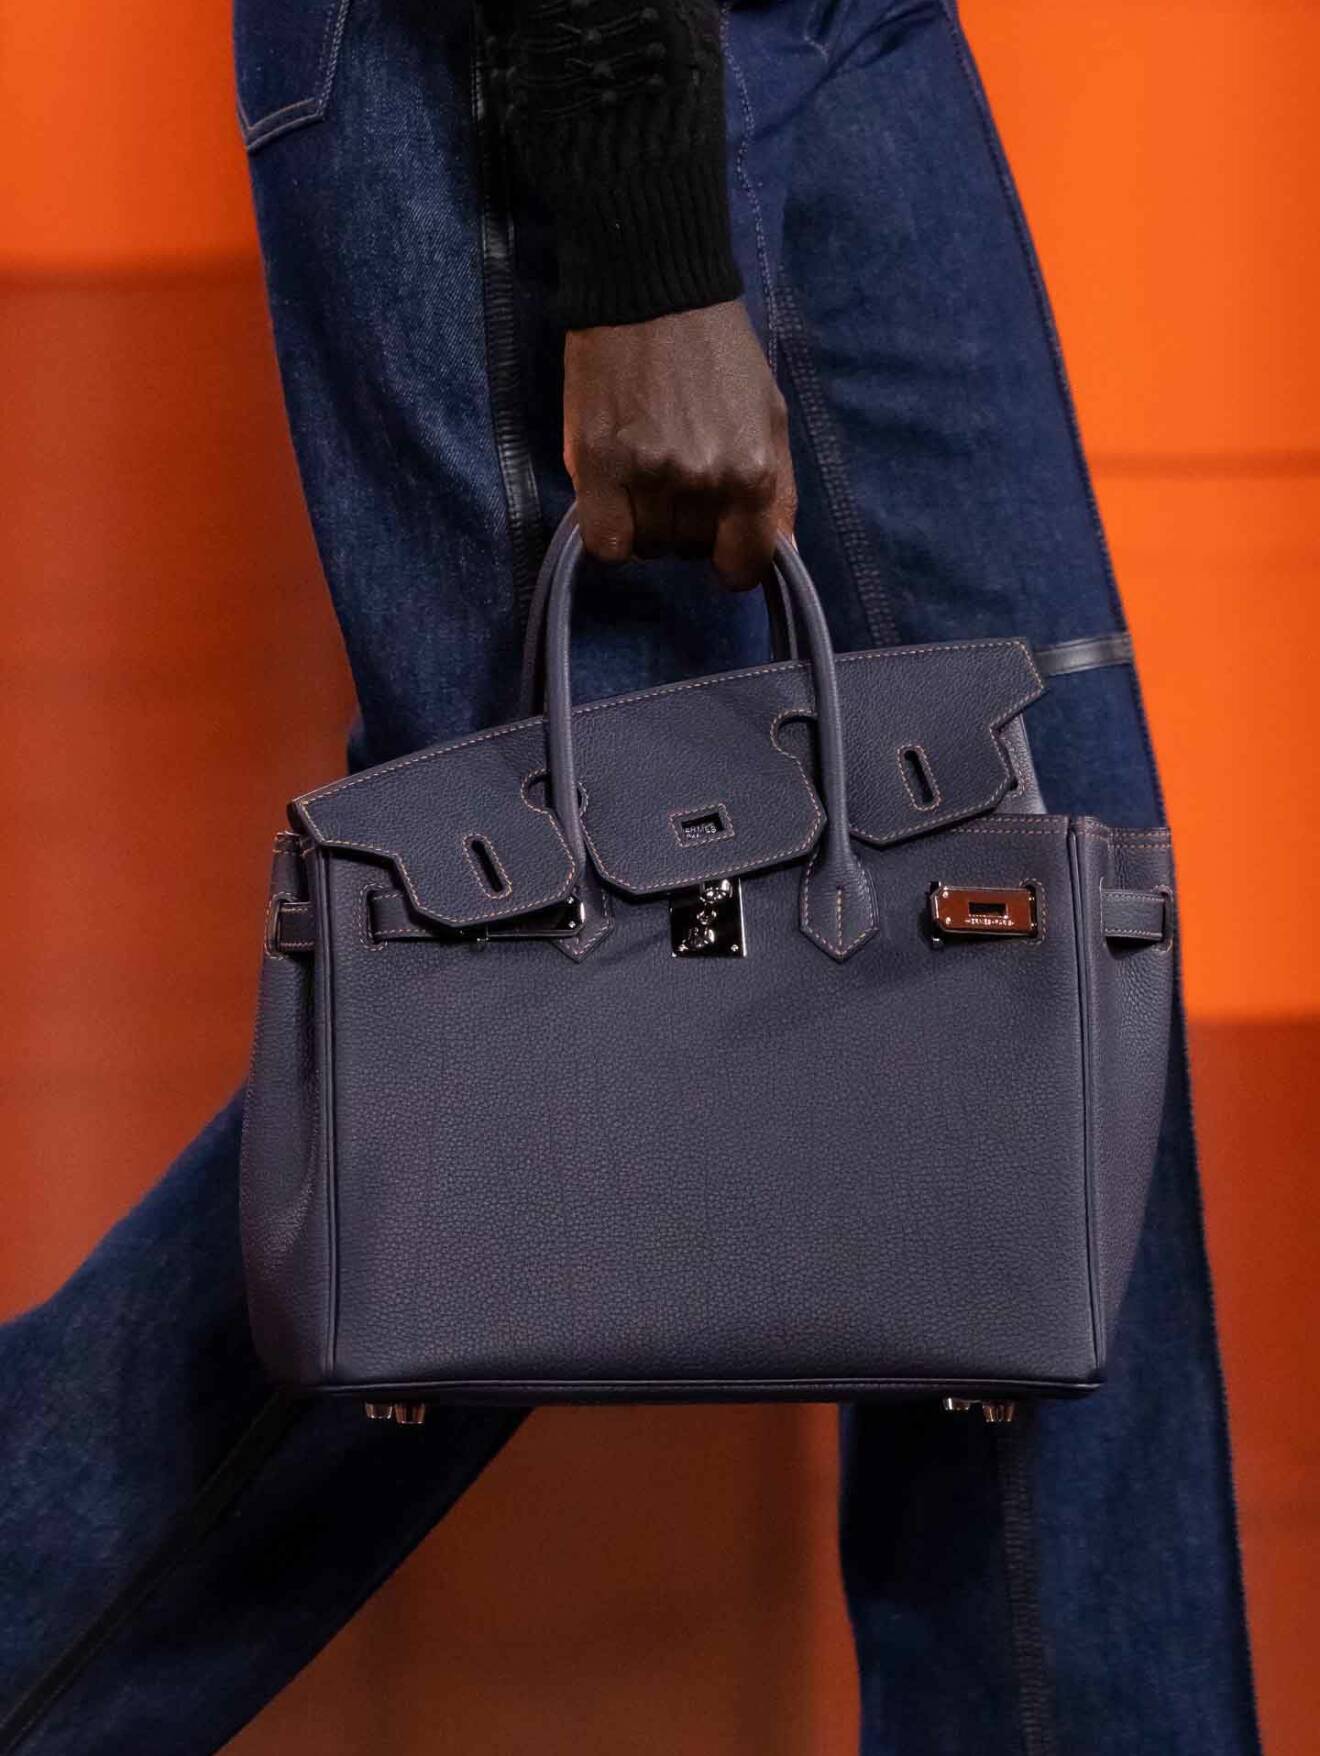 Hermès FW21 bag väska